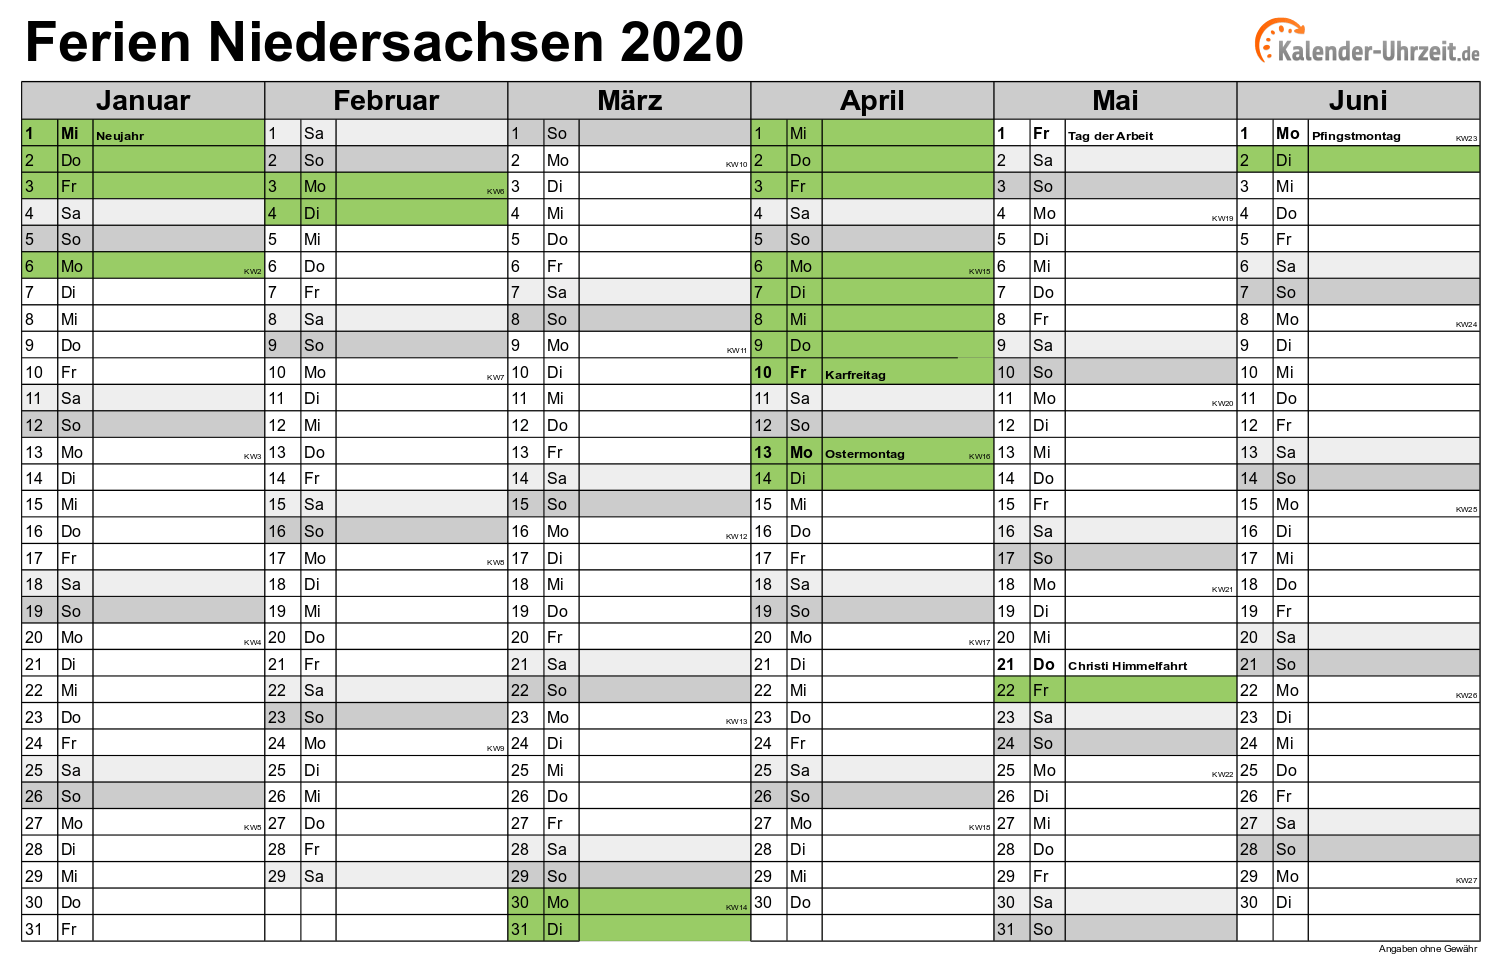 Ferien Niedersachsen 2020 - Ferienkalender zum Ausdrucken